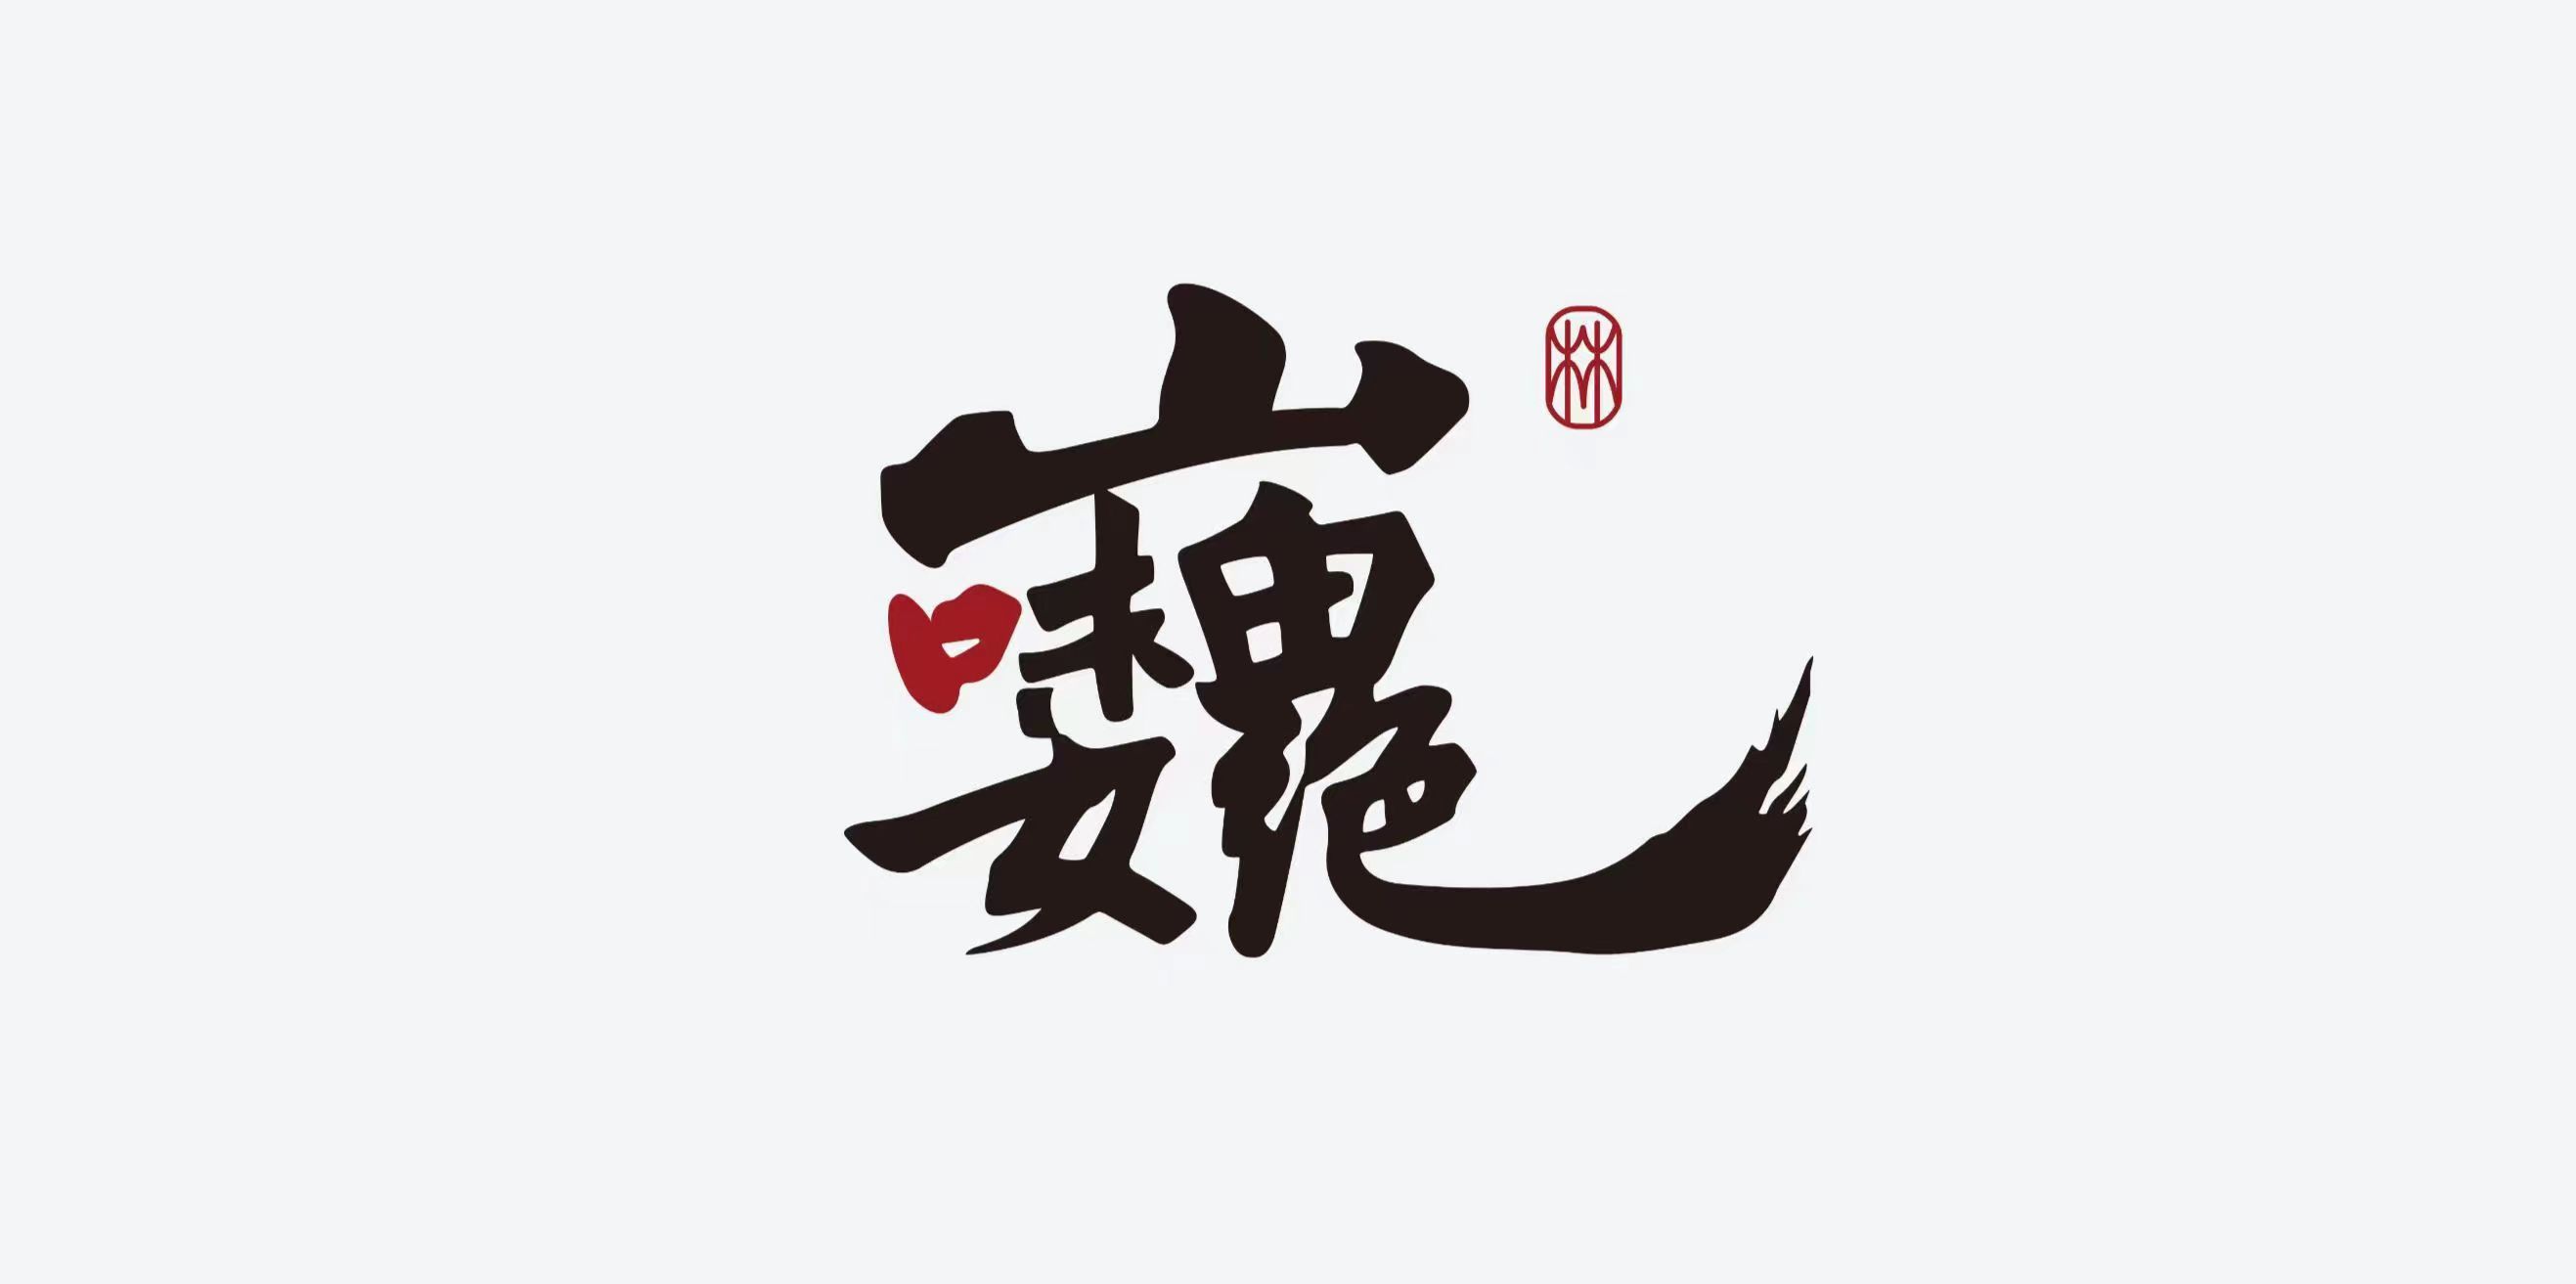 重庆山埠餐饮管理有限公司